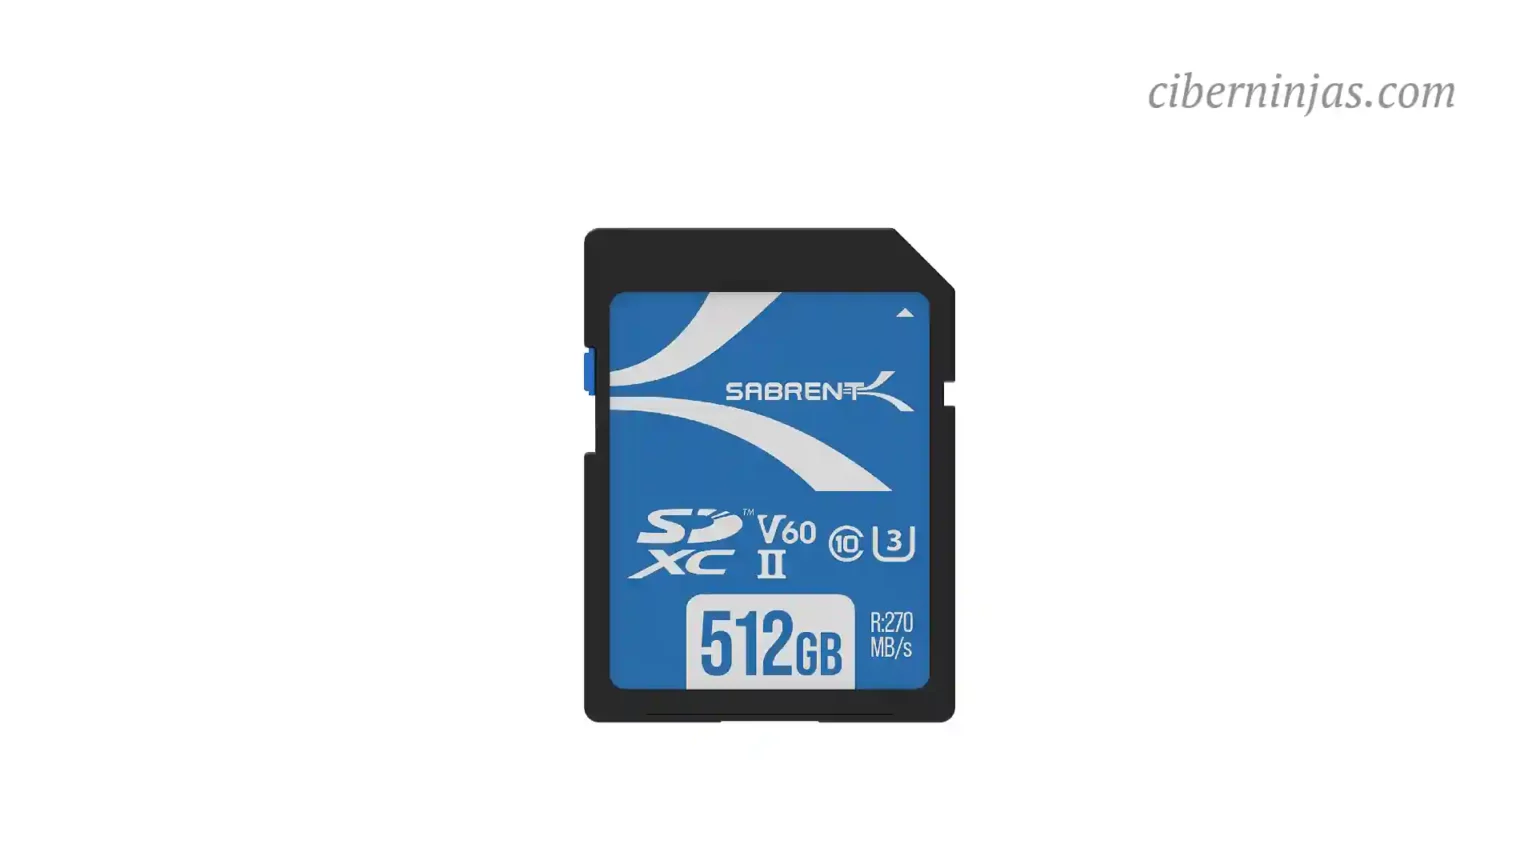 Tarjeta Micro SD de 512 GB Sabrent a precio mínimo histórico Amazon, perfecta para Móviles y Fotógrafos